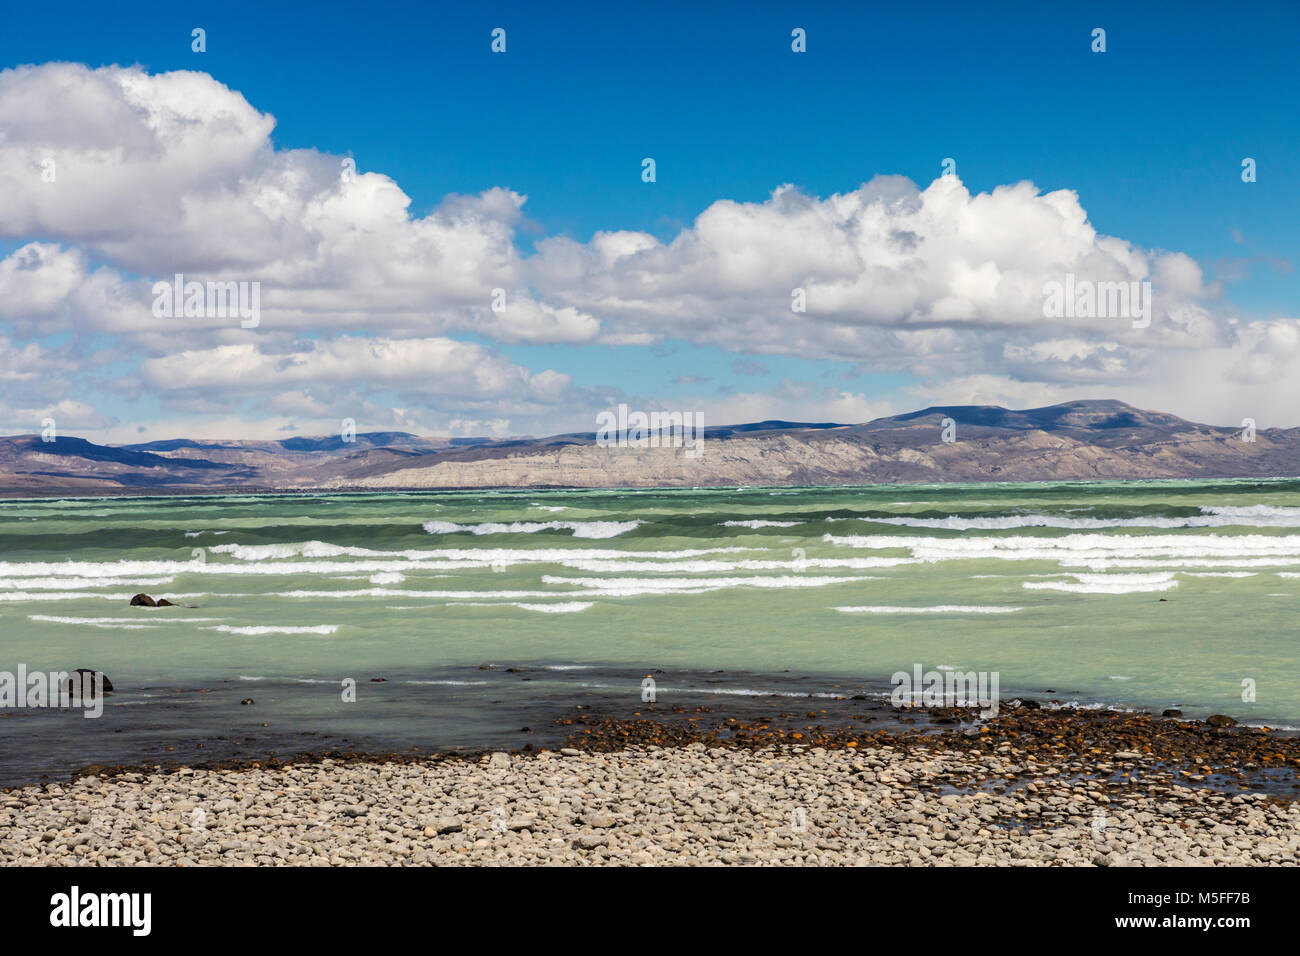 Vento onde spazzato sul colore glaciale acque del Lago Viedma in prossimità della punta del lago; Patagonia Argentina; Foto Stock